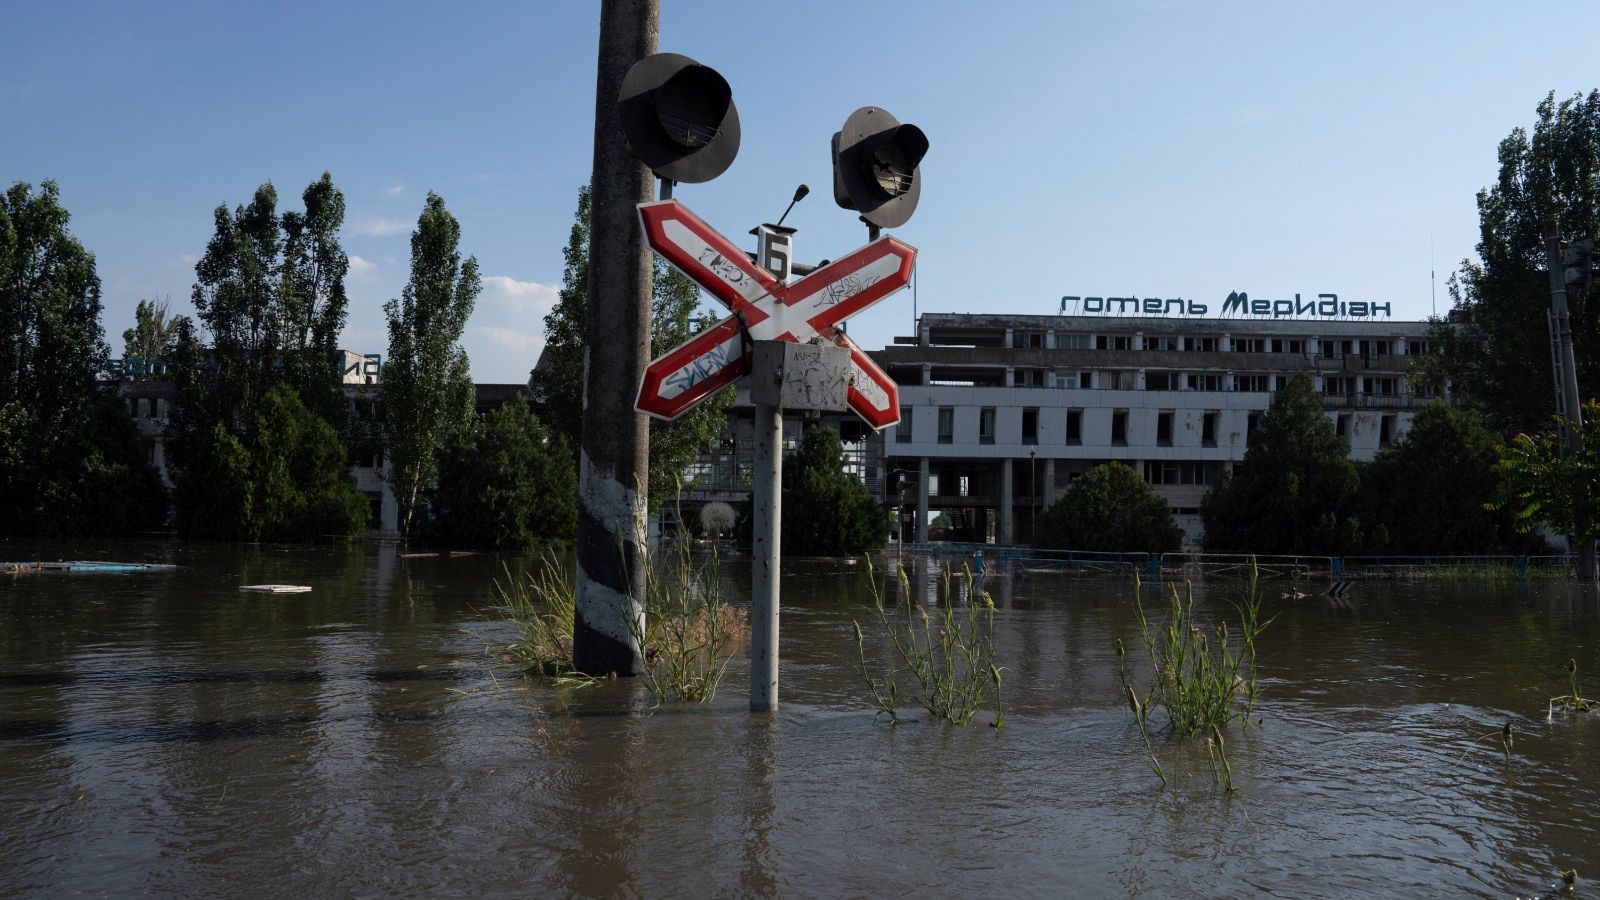 شاهد: فرار مئات السكان بعد انهيار سدّ كاخوفكا جنوب أوكرانيا | Euronews